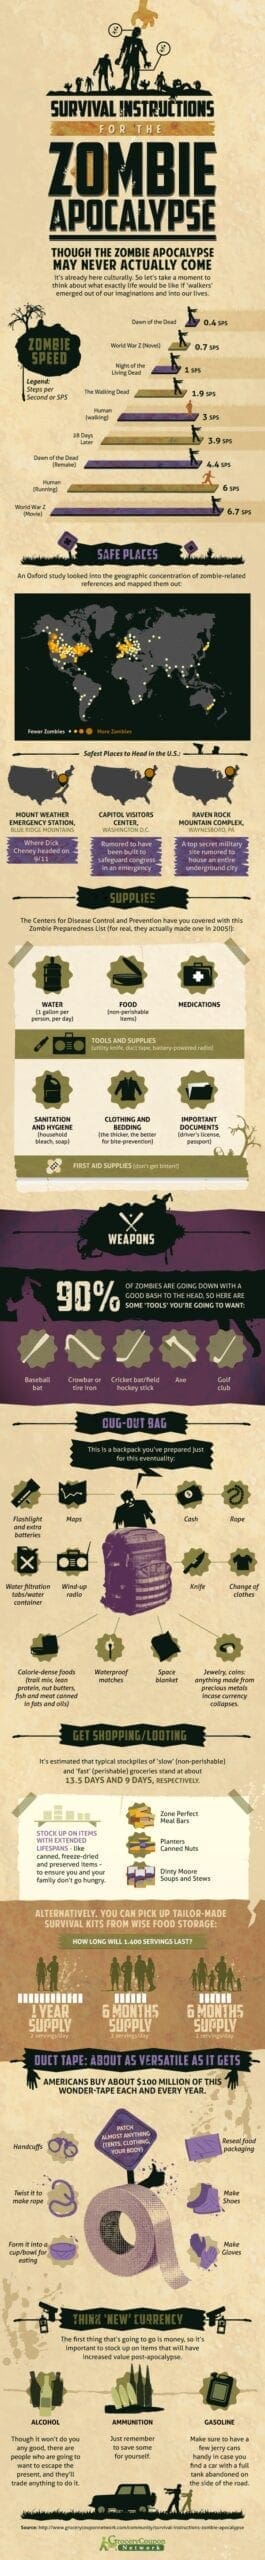 Zombie apocalypse infographic